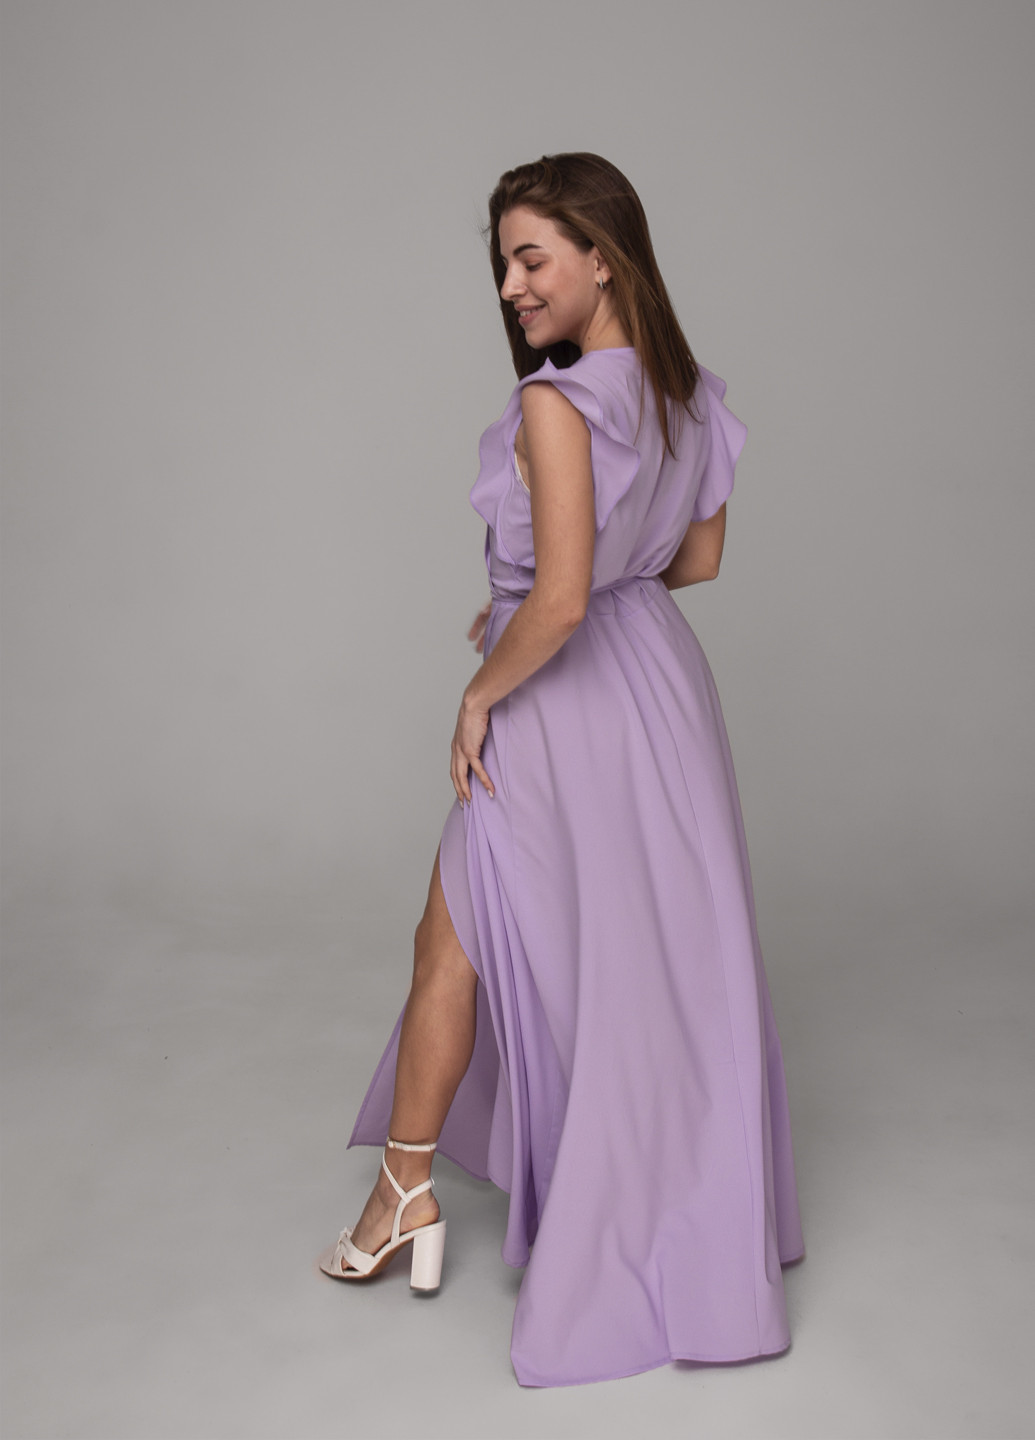 Фиолетовое праздничный длинное платье на запах с воланами на рукавах GorLin однотонное